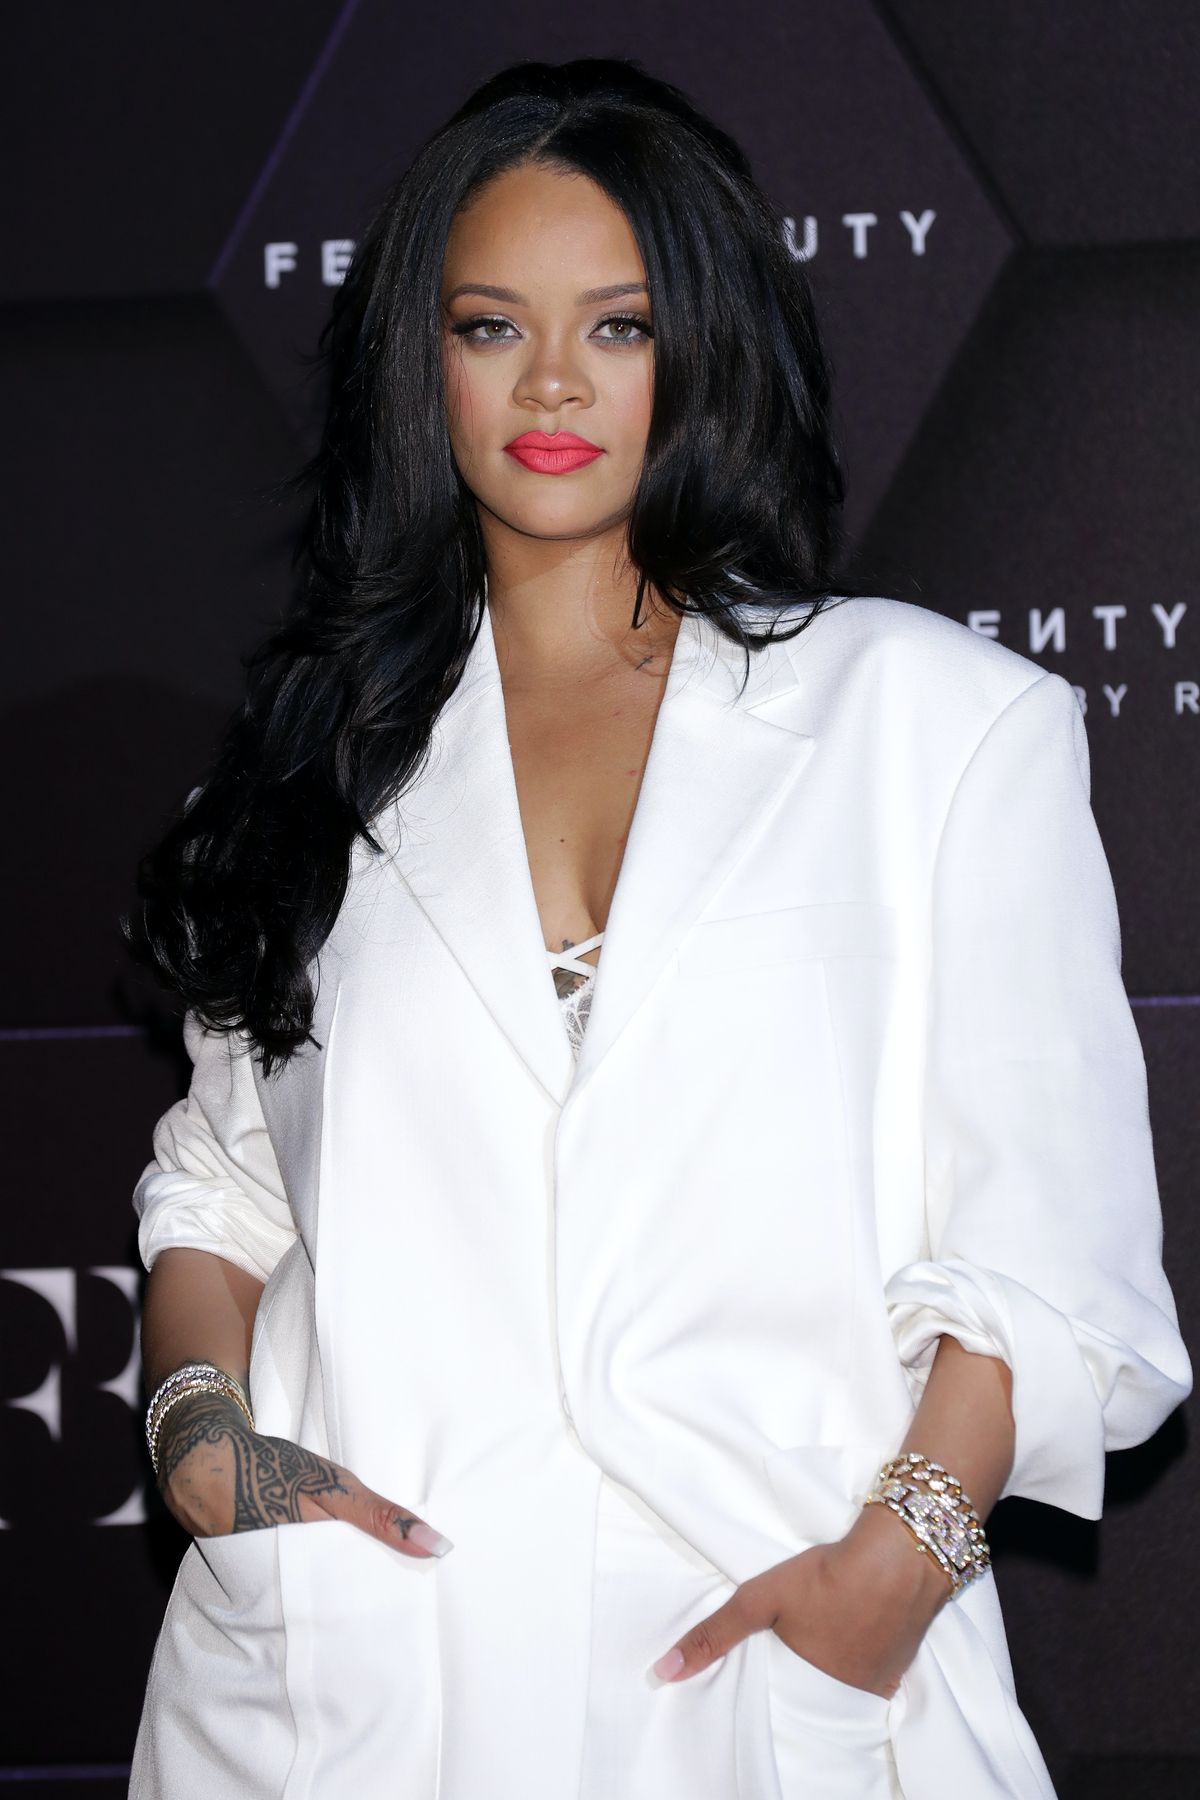 Kaikki mitä tähän mennessä tiedämme Rihannan raportoidusta Fenty Hair Linesta